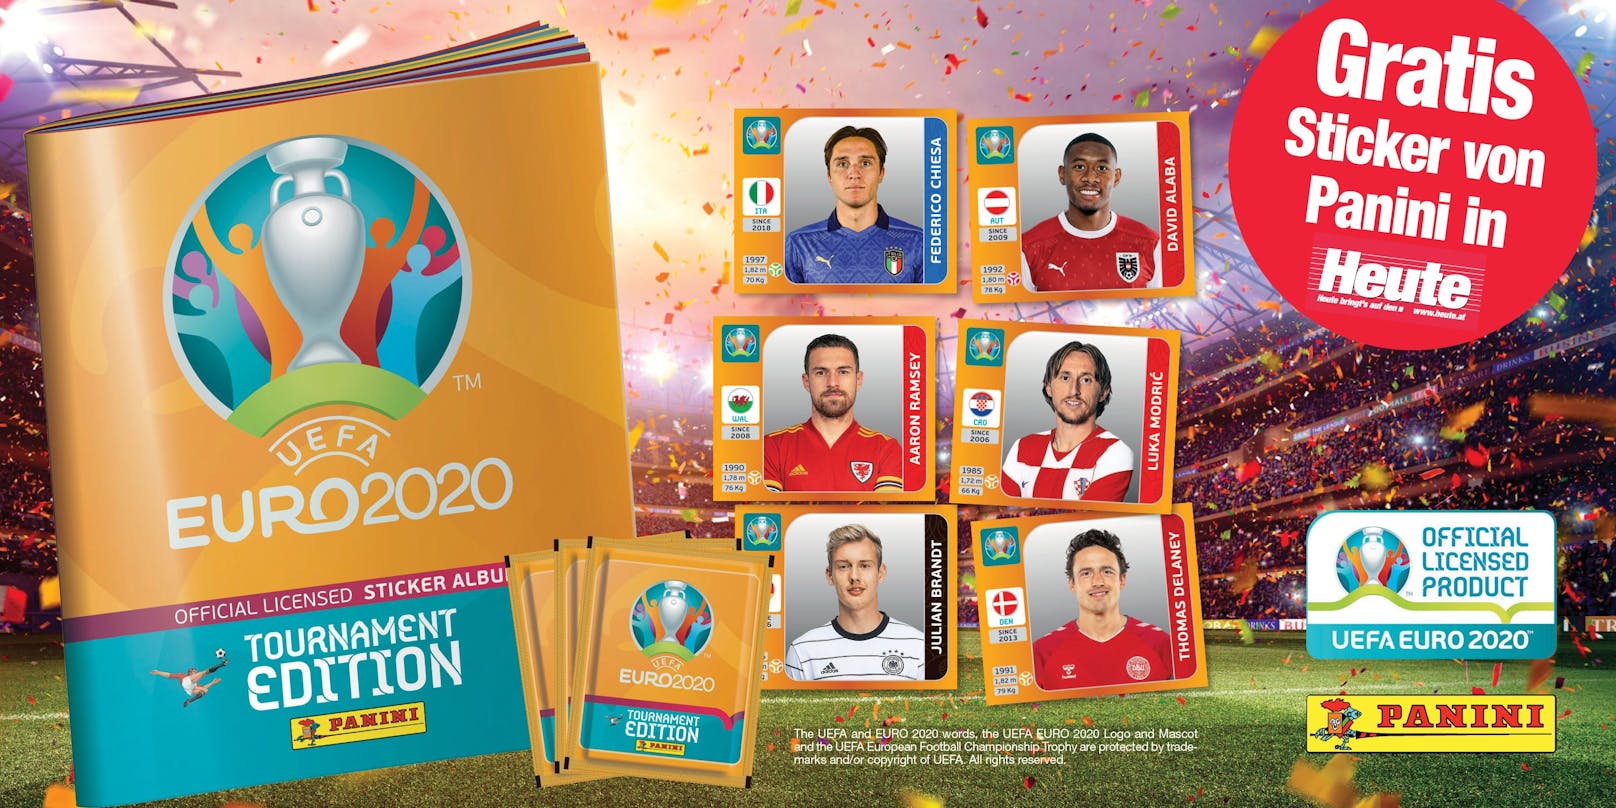 Die offizielle UEFA EURO 2020™ Tournament Edition Stickerkollektion von Panini